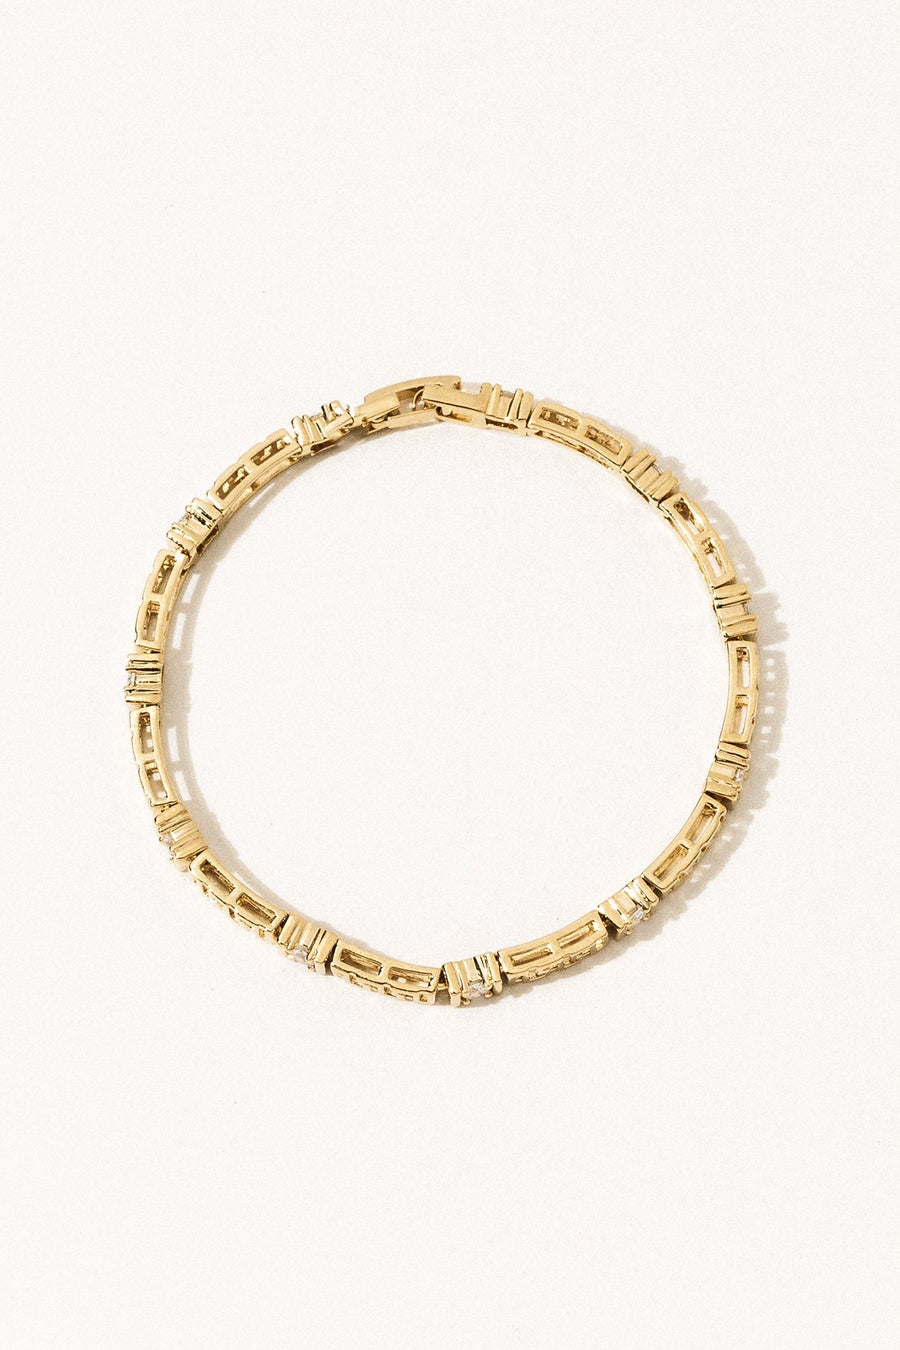 Sparrow Jewelry Gold Brooklyn CZ Bracelet